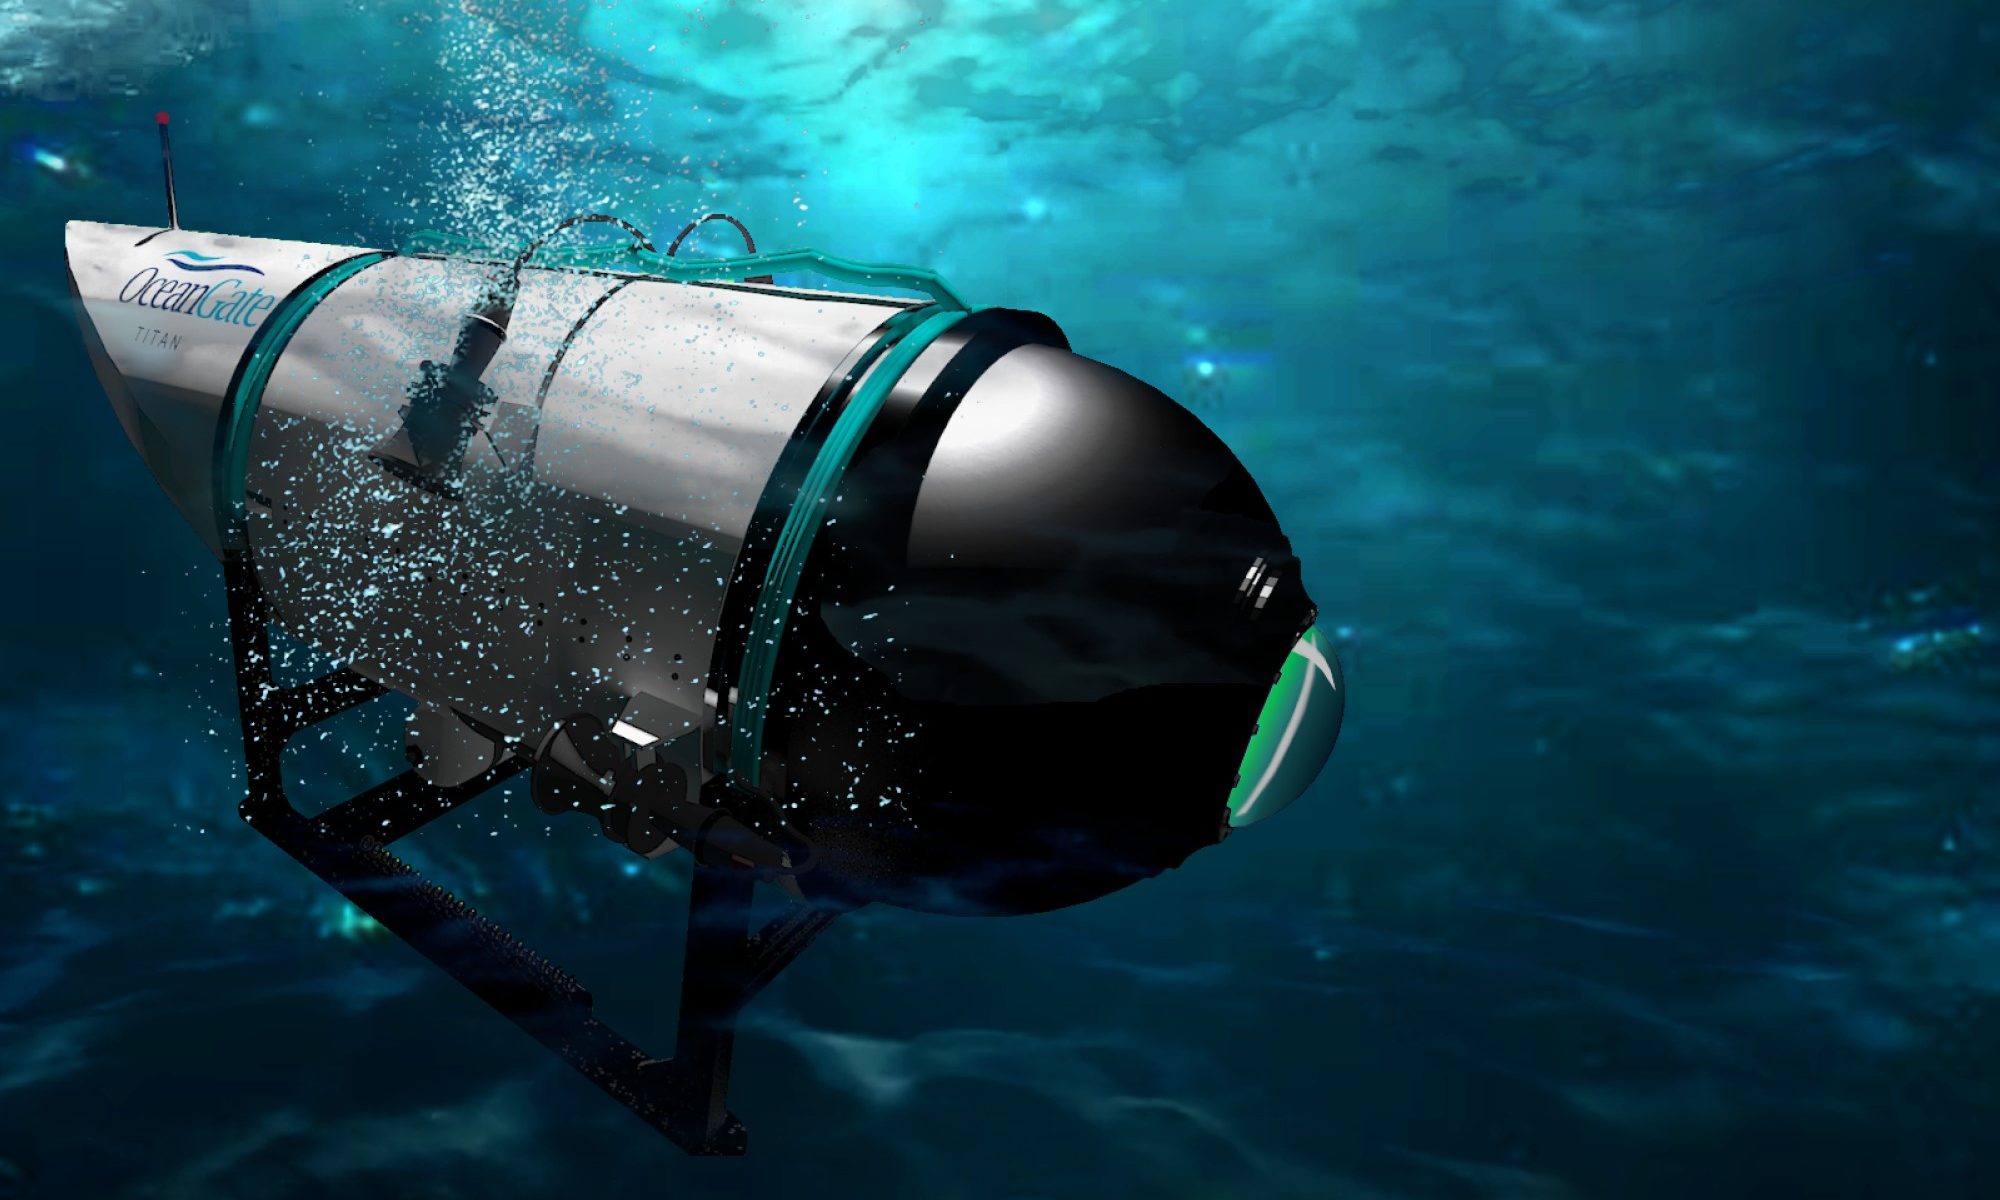 render of Titan submersible